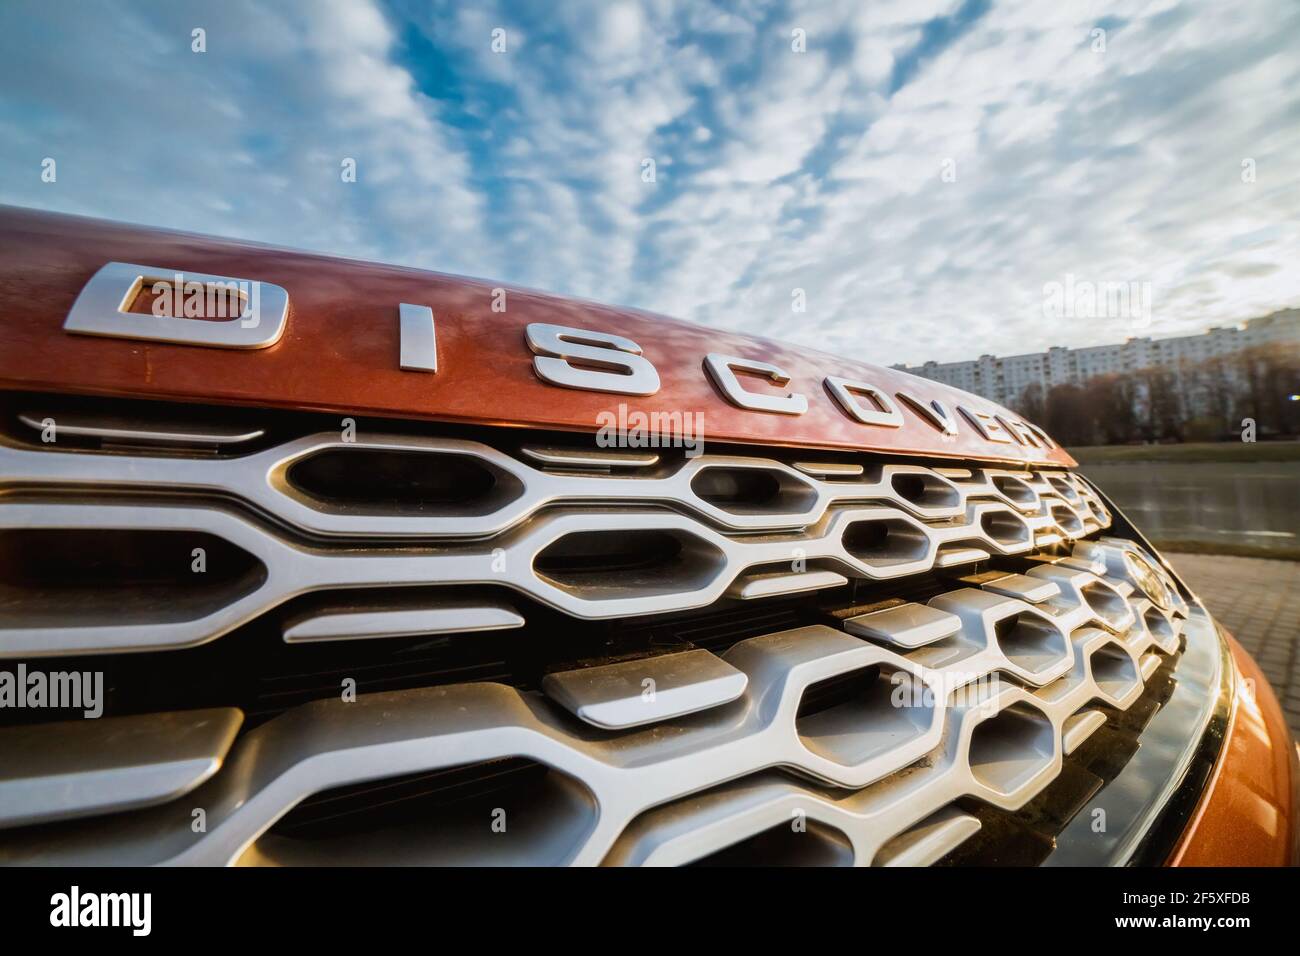 Moskau, Russland - 20. Dezember 2019: Kühlergrill unter der Haube des Premium england suv Land Rover Discovery Sport. Vorderseite des Autos, Nahaufnahme Orange Auto. All-Rad-Auto geparkt. Stockfoto